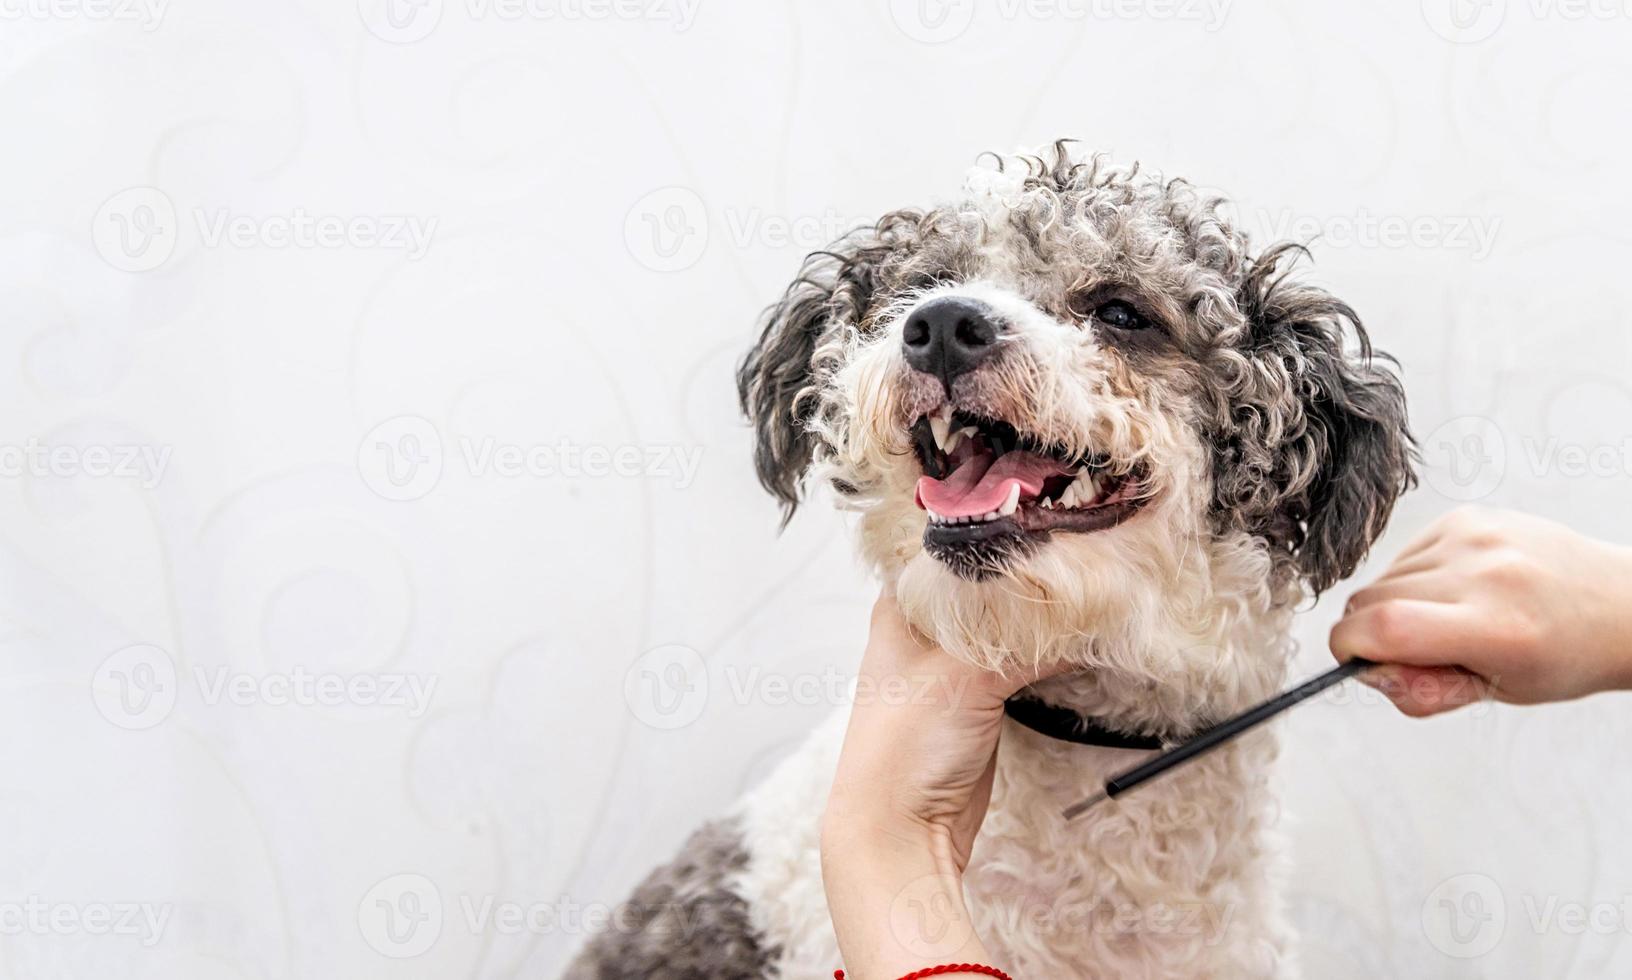 lindo cachorro bichon frise branco e preto sendo preparado por um tratador profissional foto